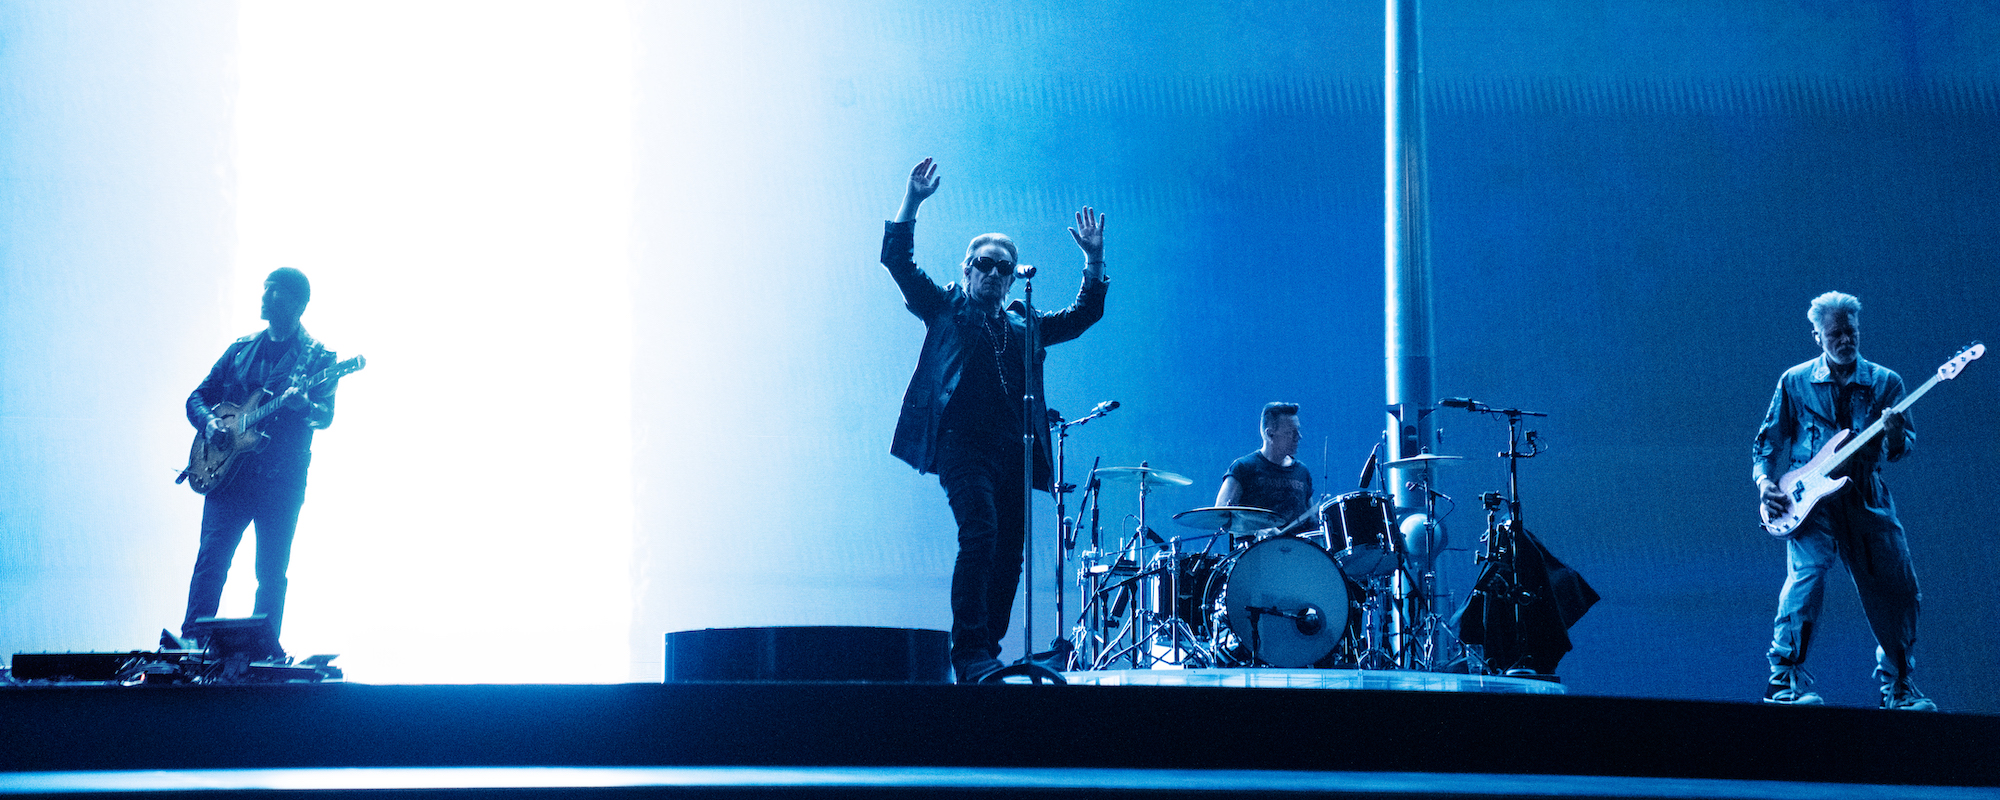 Les célébrités affluent à la soirée d'ouverture de la résidence de U2 à Las Vegas